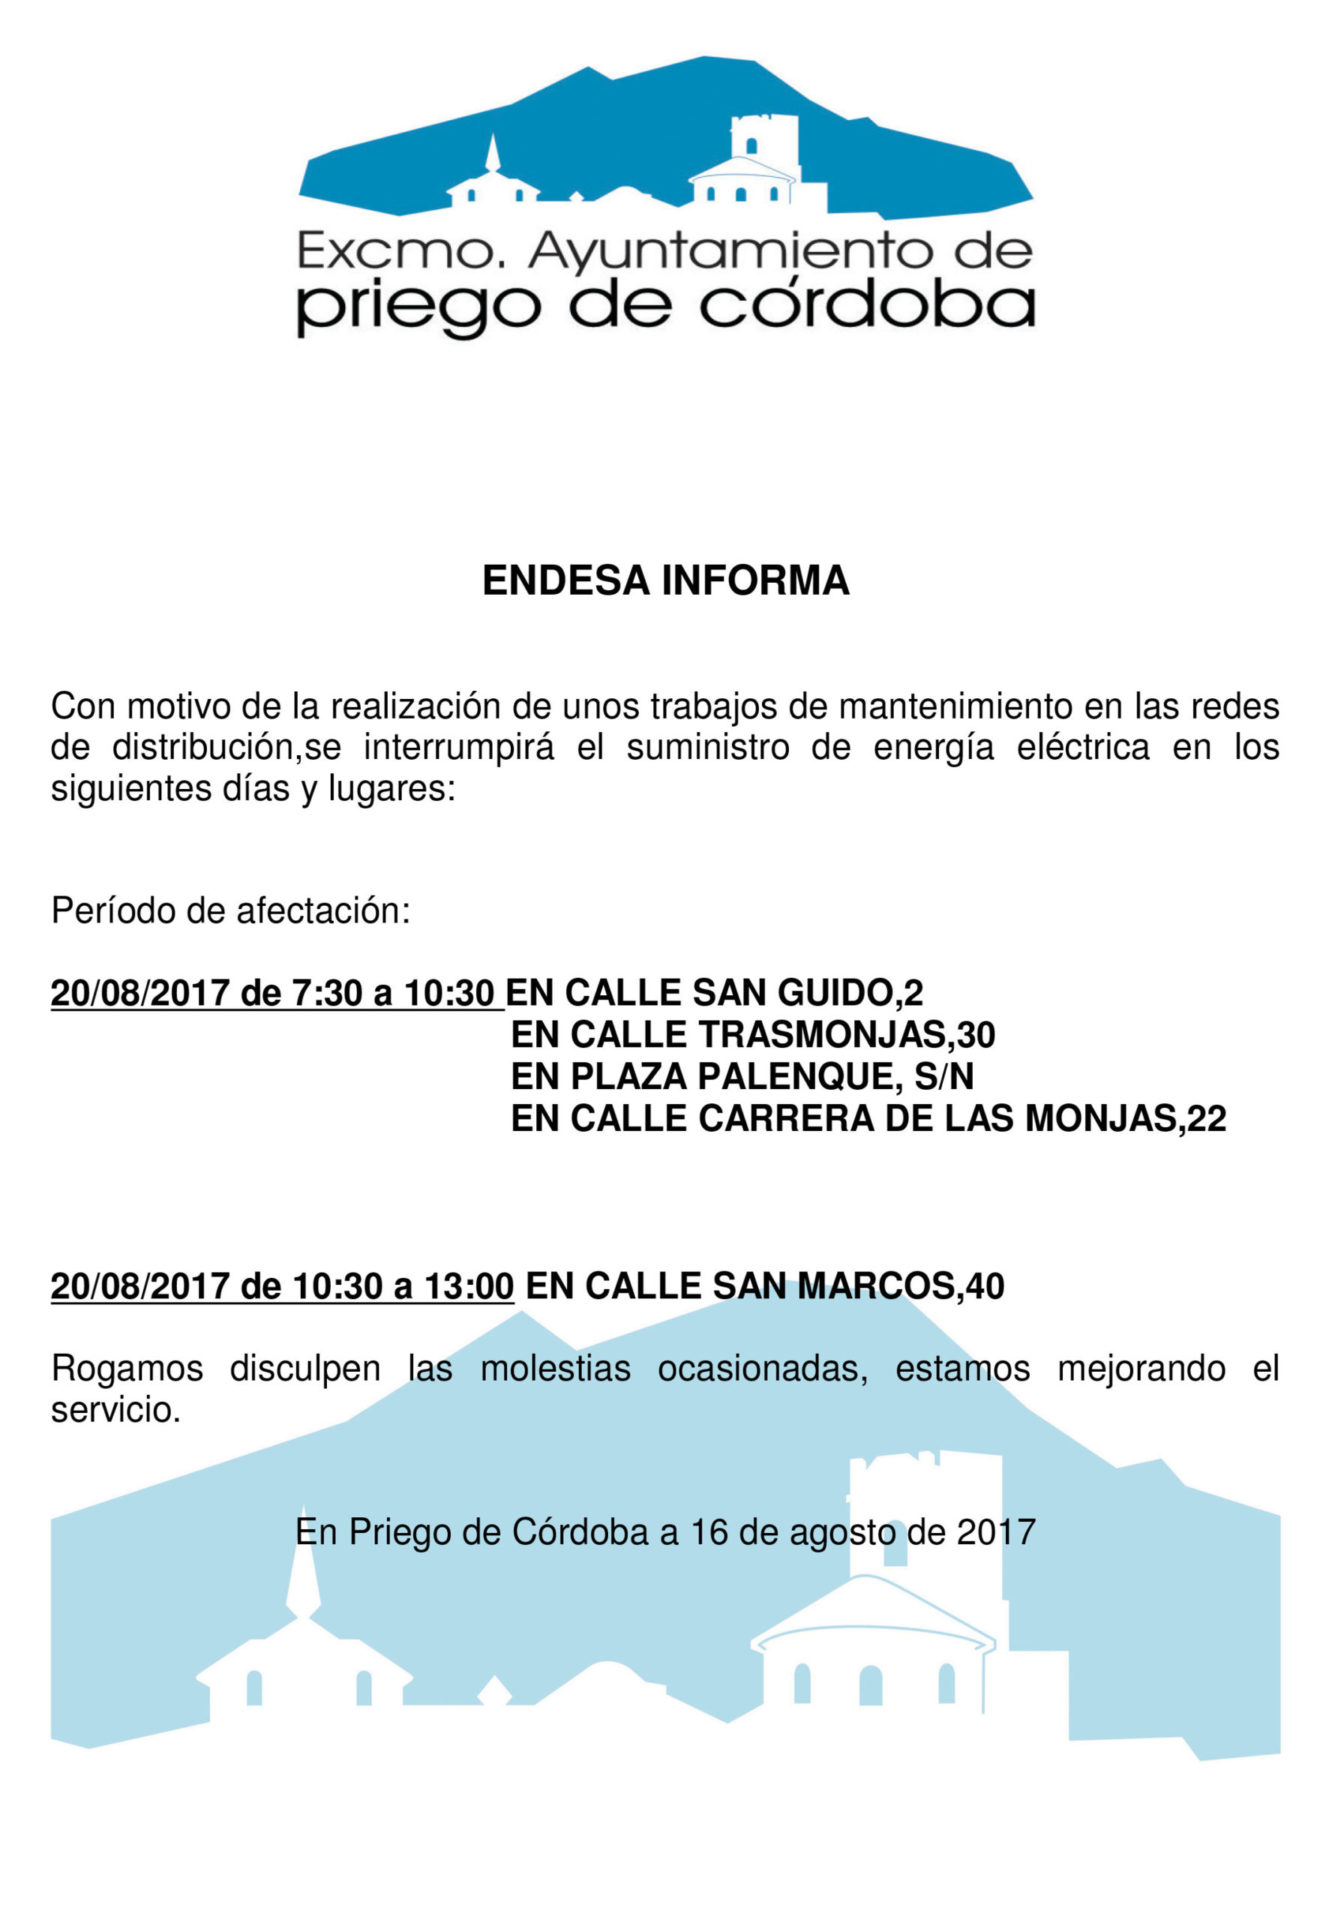 ENDESA INFORMA DE CORTE DE SUMINISTRO ELÉCTRICO EN VARIOS LUGARES PARA EL DÍA 20 DE AGOSTO DE 2017 1